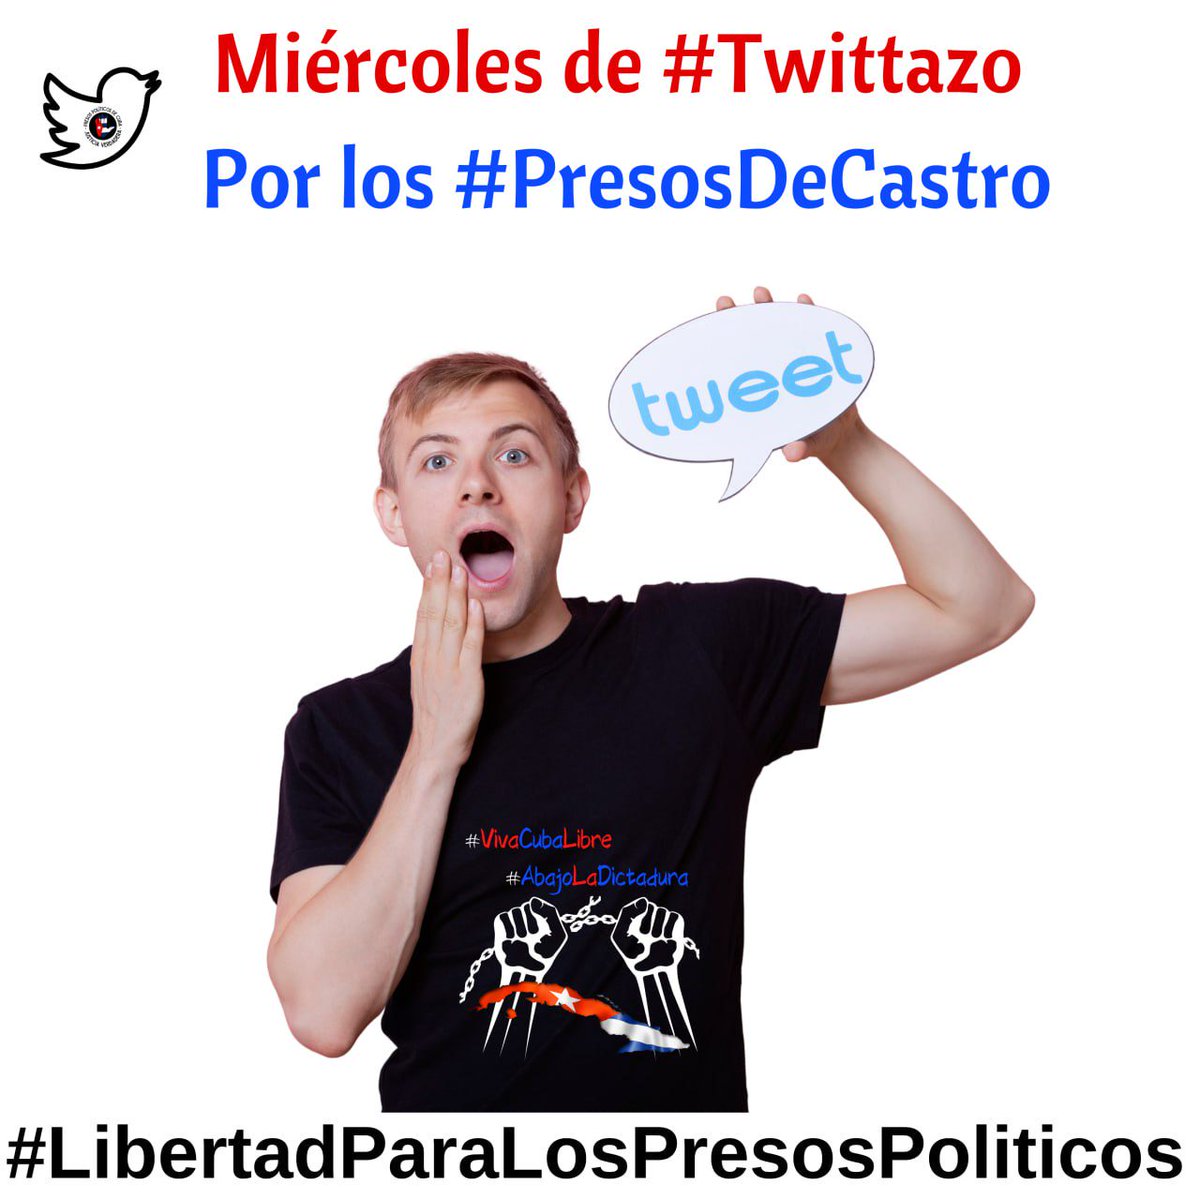 #TwıtterCuba aquí venimos a recordarte qué el Miércoles es el día del #Twittazo por los #PresosDeCastro ¡No faltes!

#HastaQueSeanLibres 
#LibertadParaLosPresosPoliticos